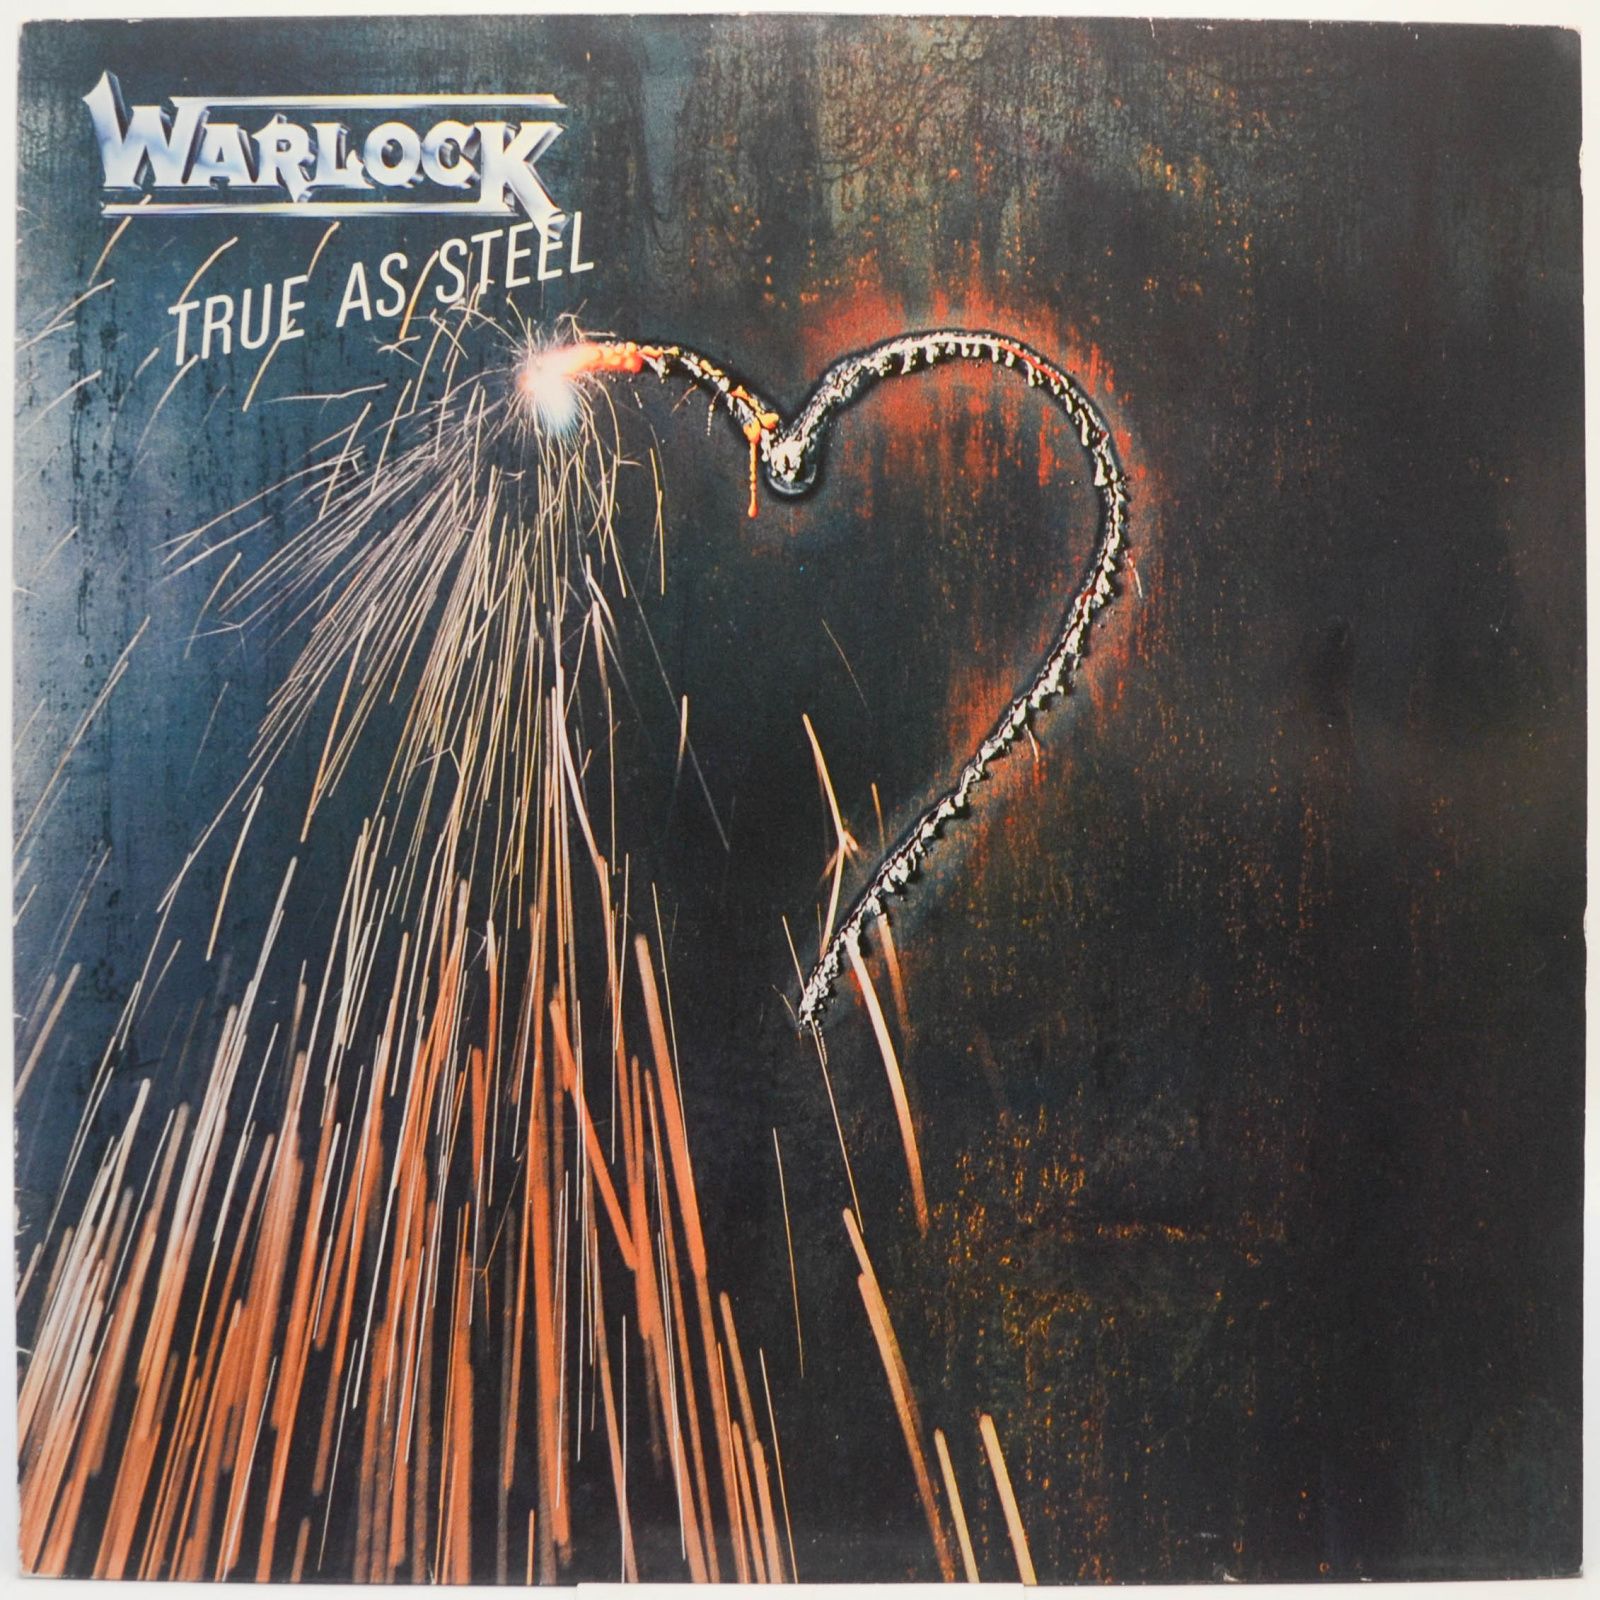 Warlock — True As Steel, 1986